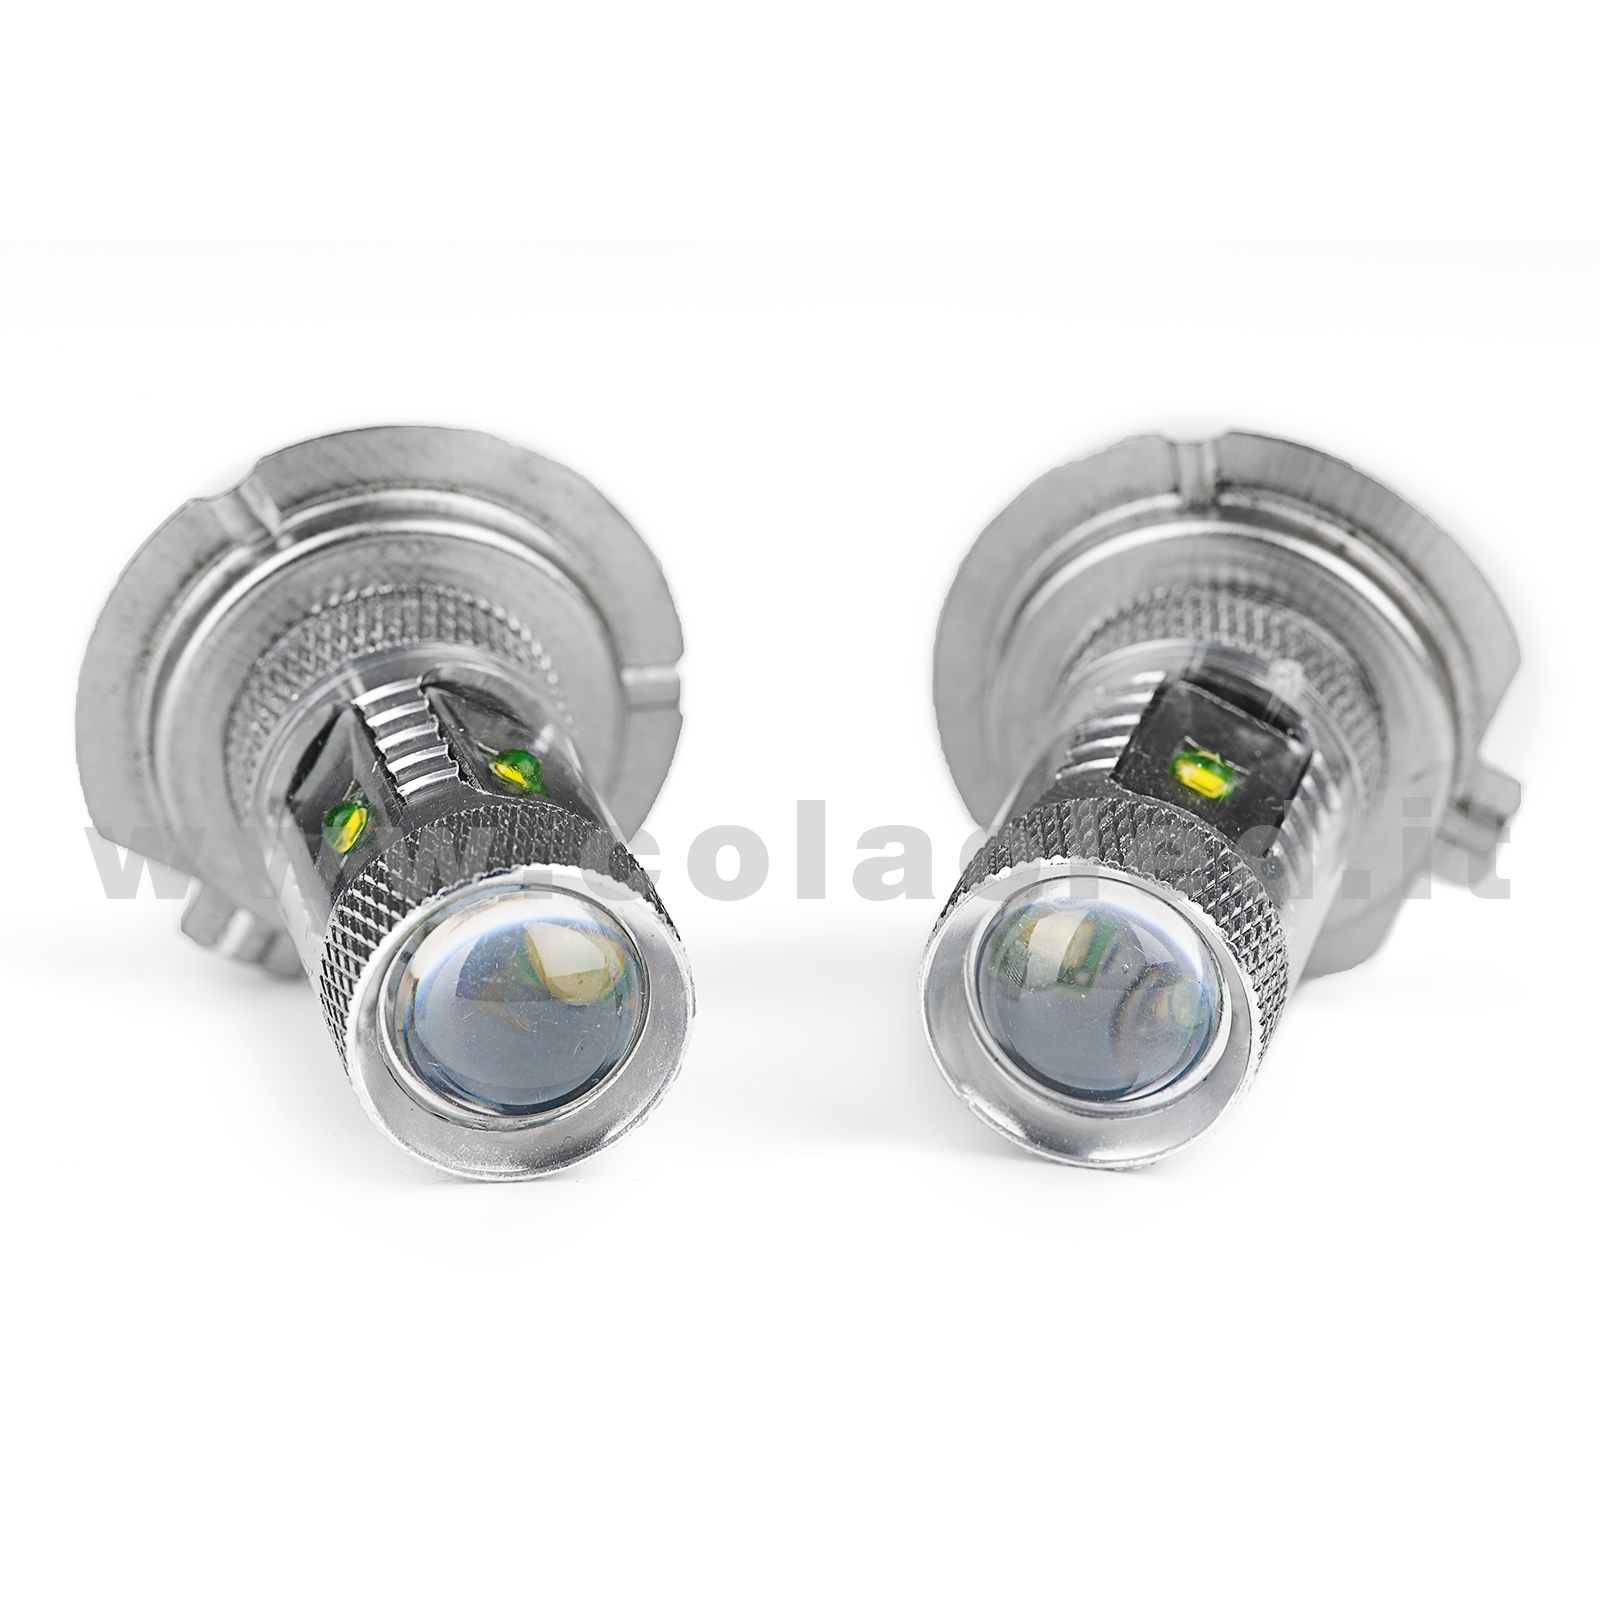 H7 DRL 2 LAMPADE LUCE DI SVOLTA INDICATORE MODELLO 4 CHIP LED CREE H7 –  Colaoled